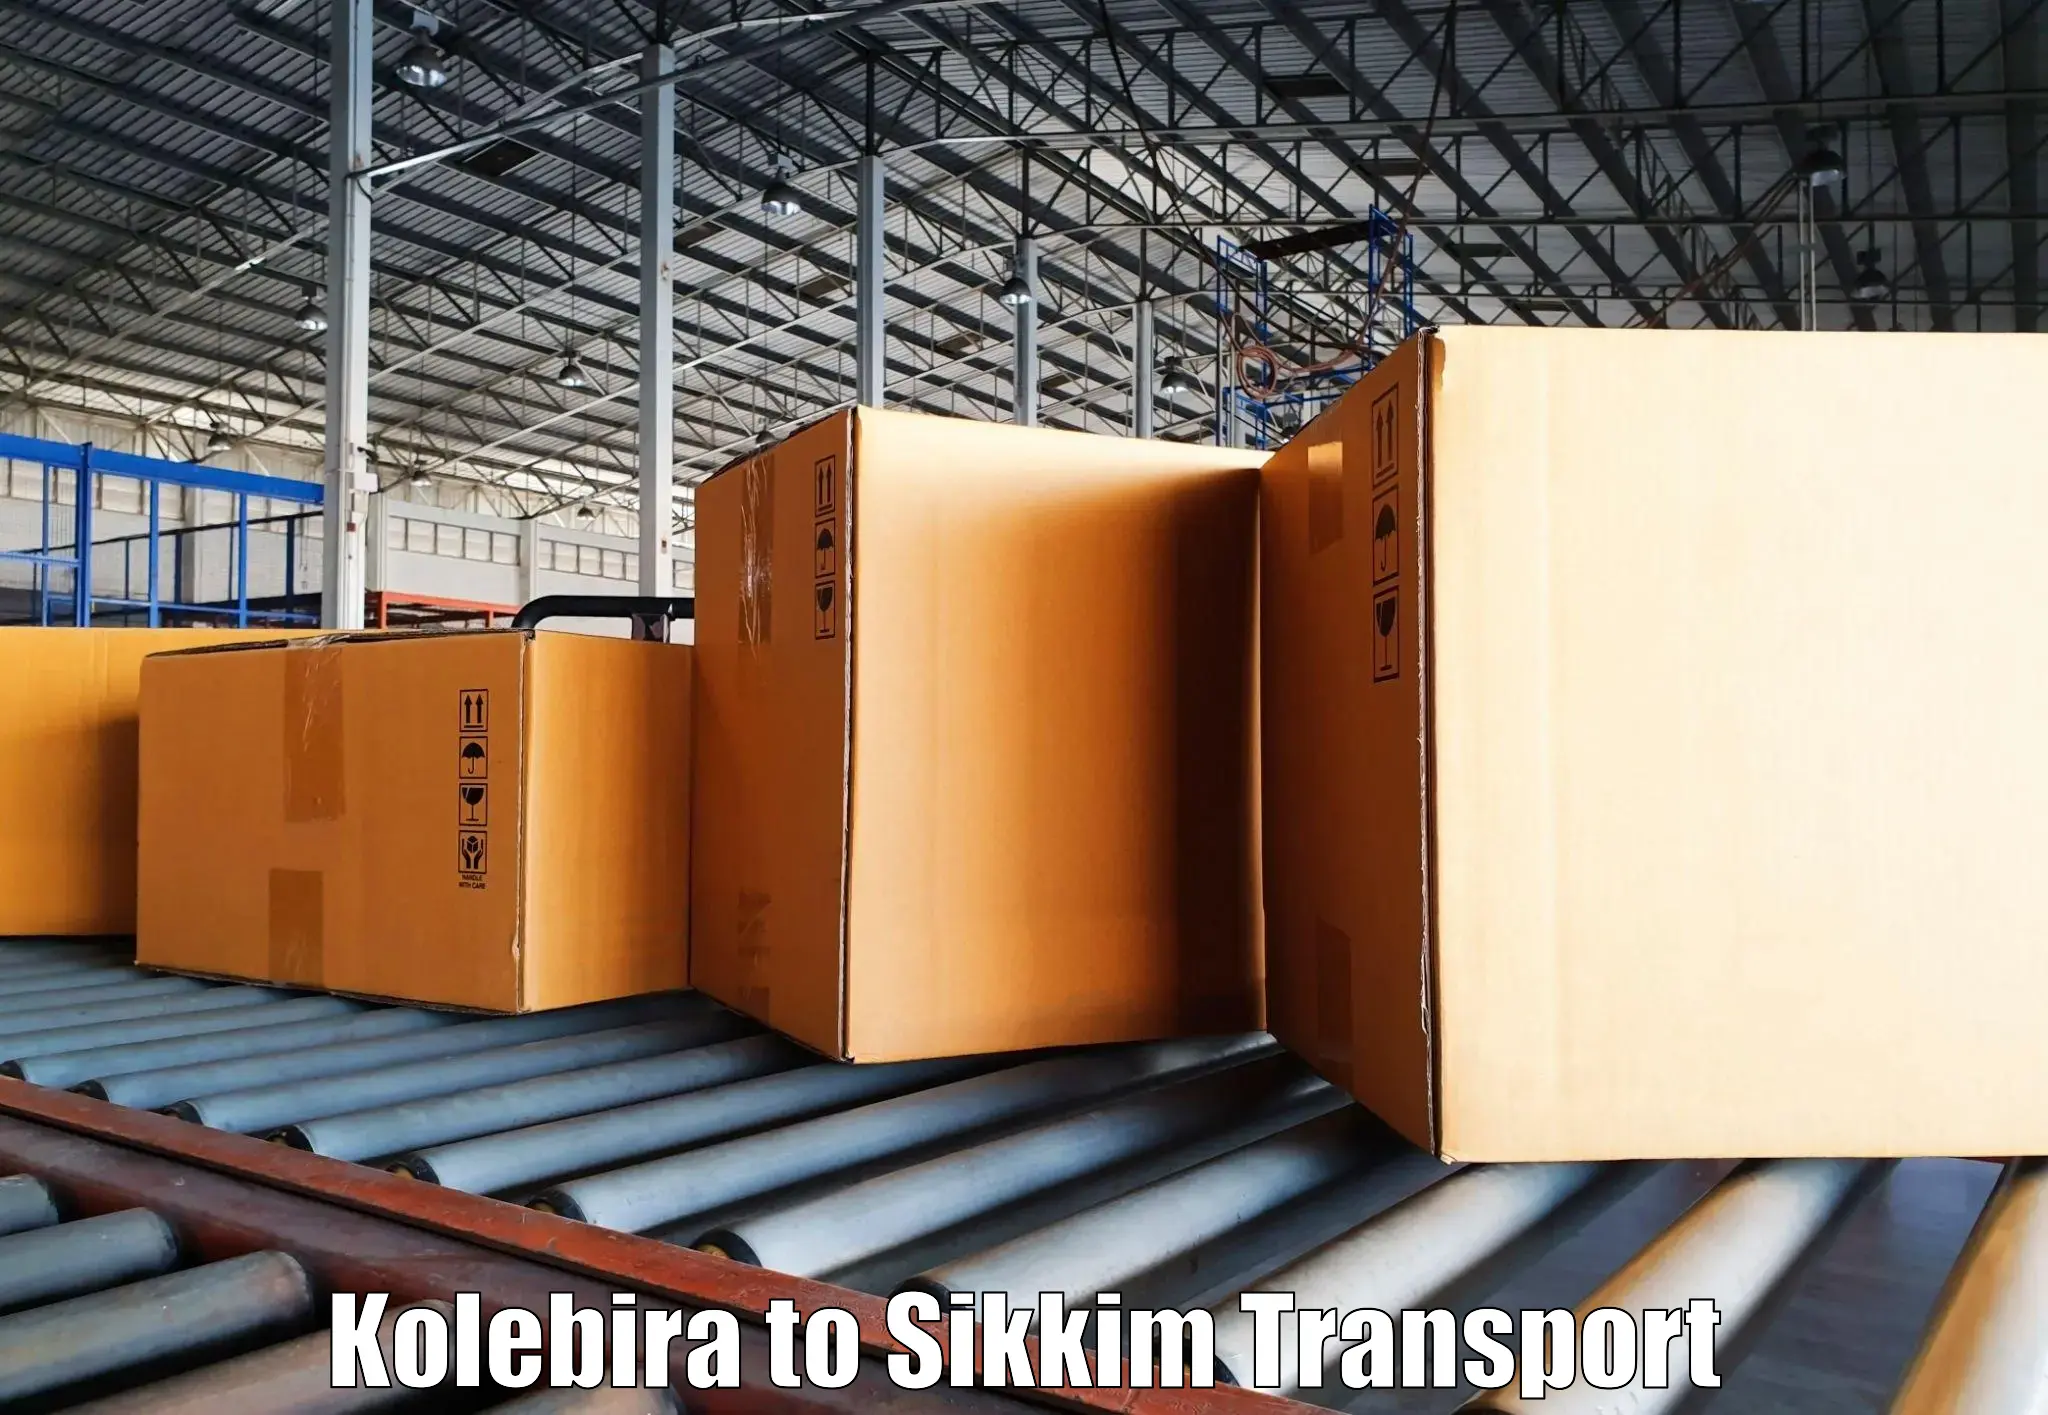 Nearest transport service Kolebira to Rongli